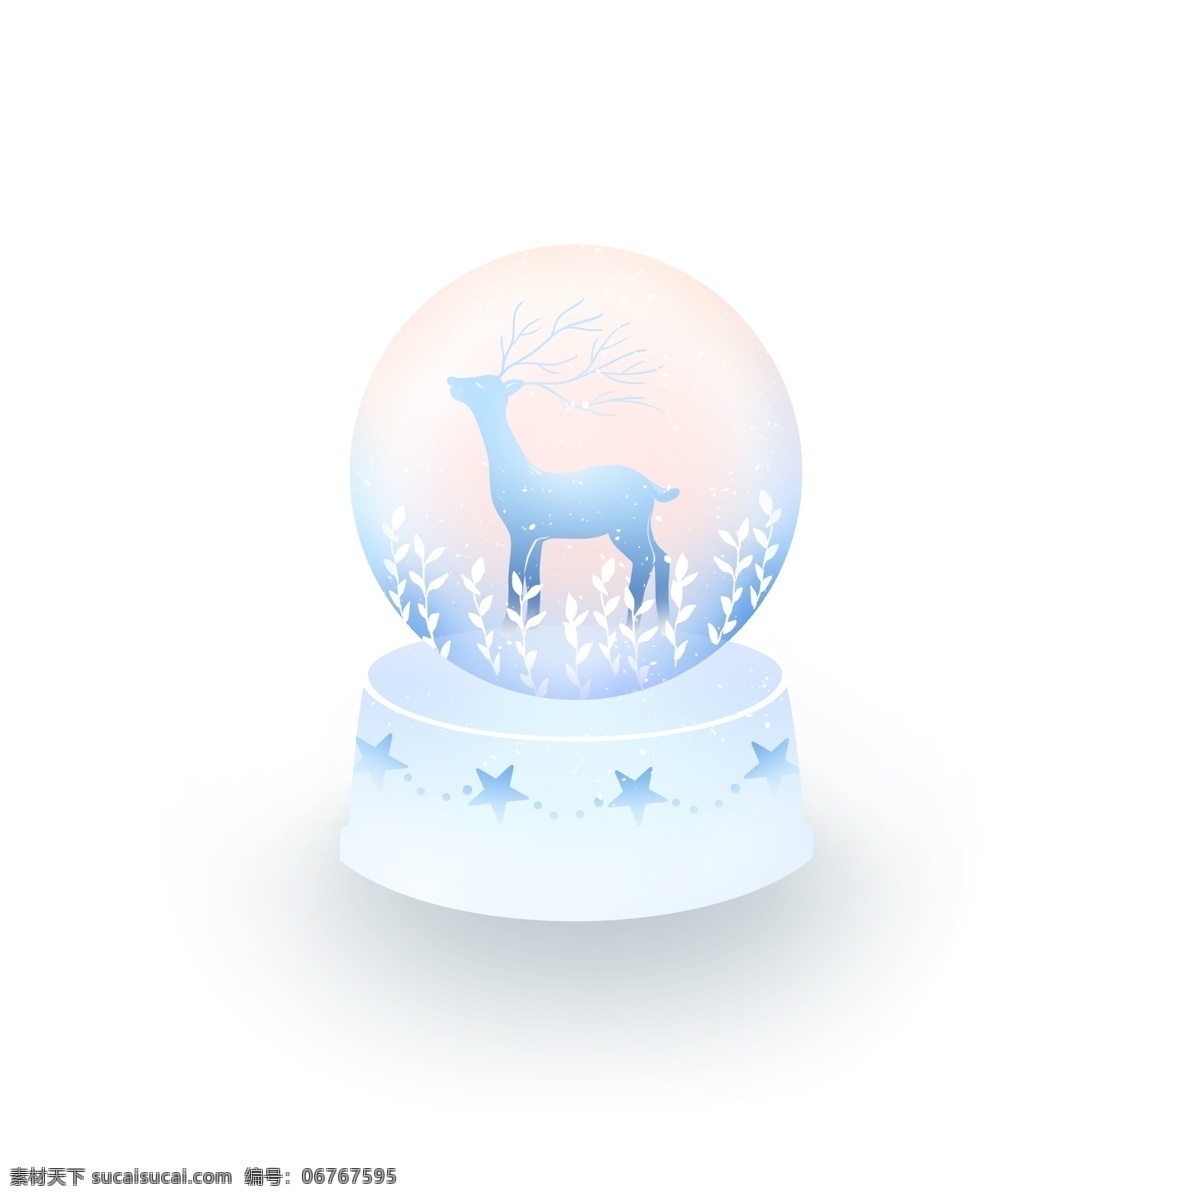 原创 手绘 水晶球 装饰 唯美 小鹿 插画素材 ps素材 装饰图案